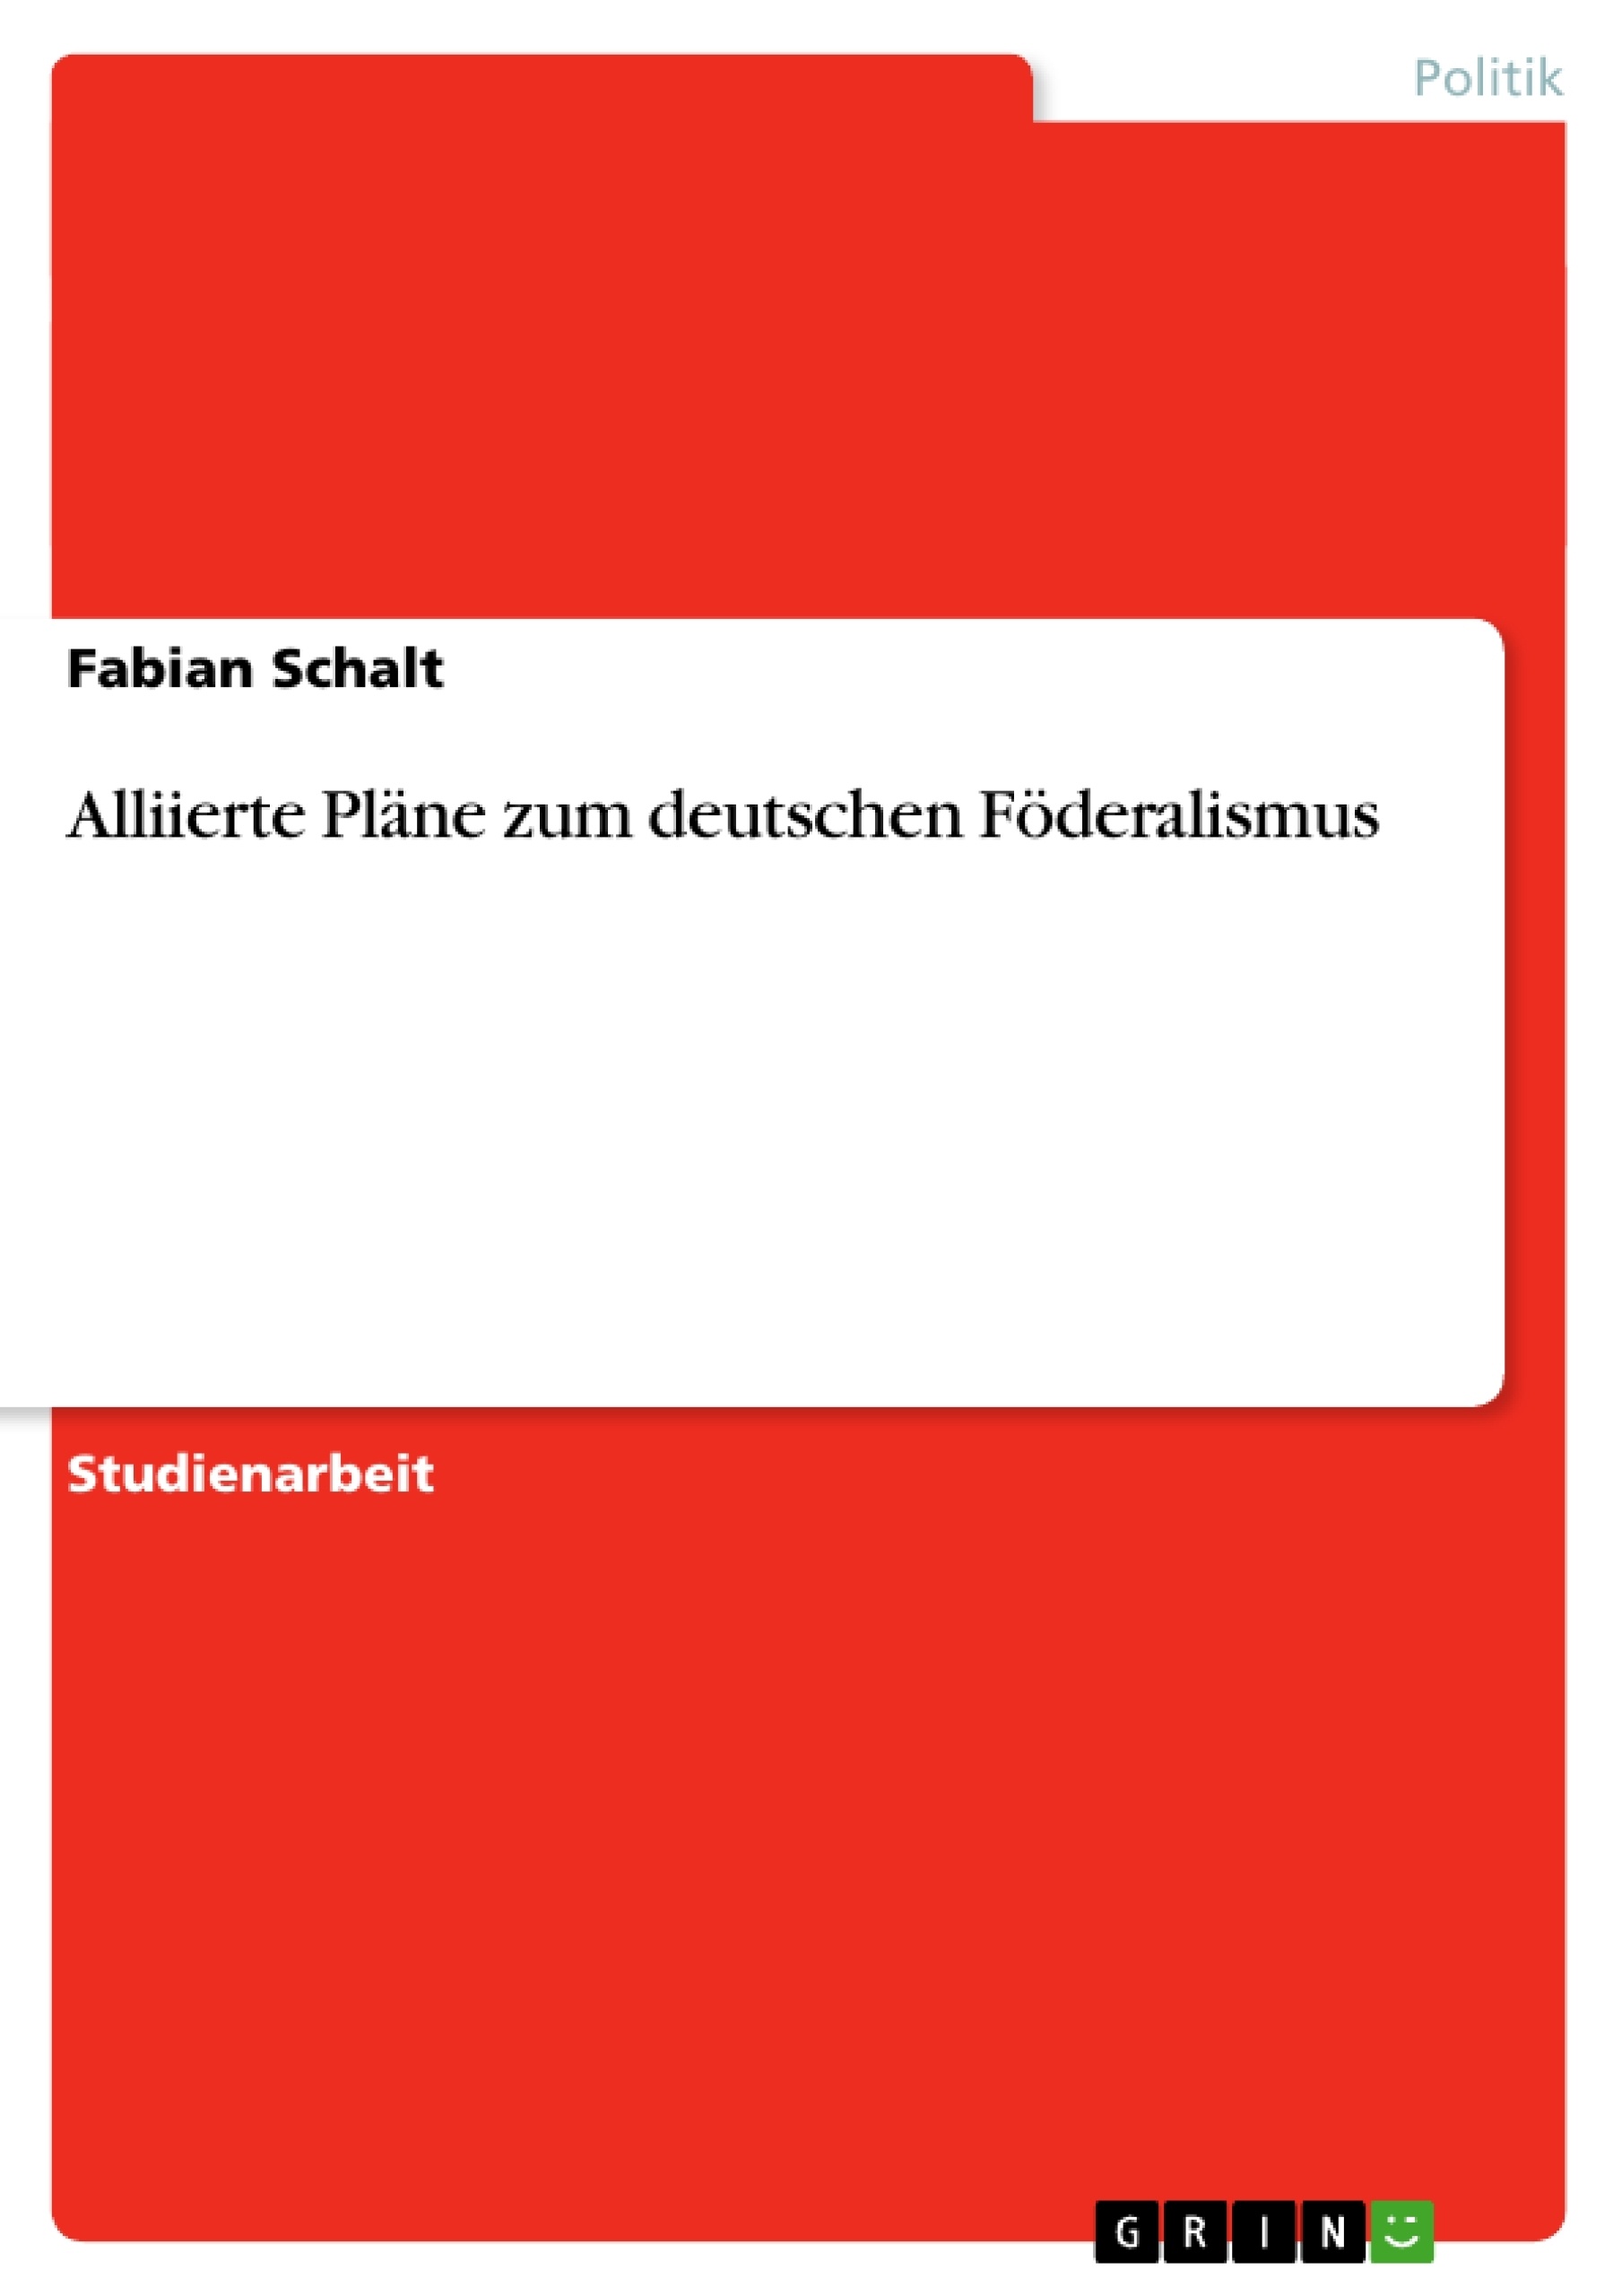 Titel: Alliierte Pläne zum deutschen Föderalismus